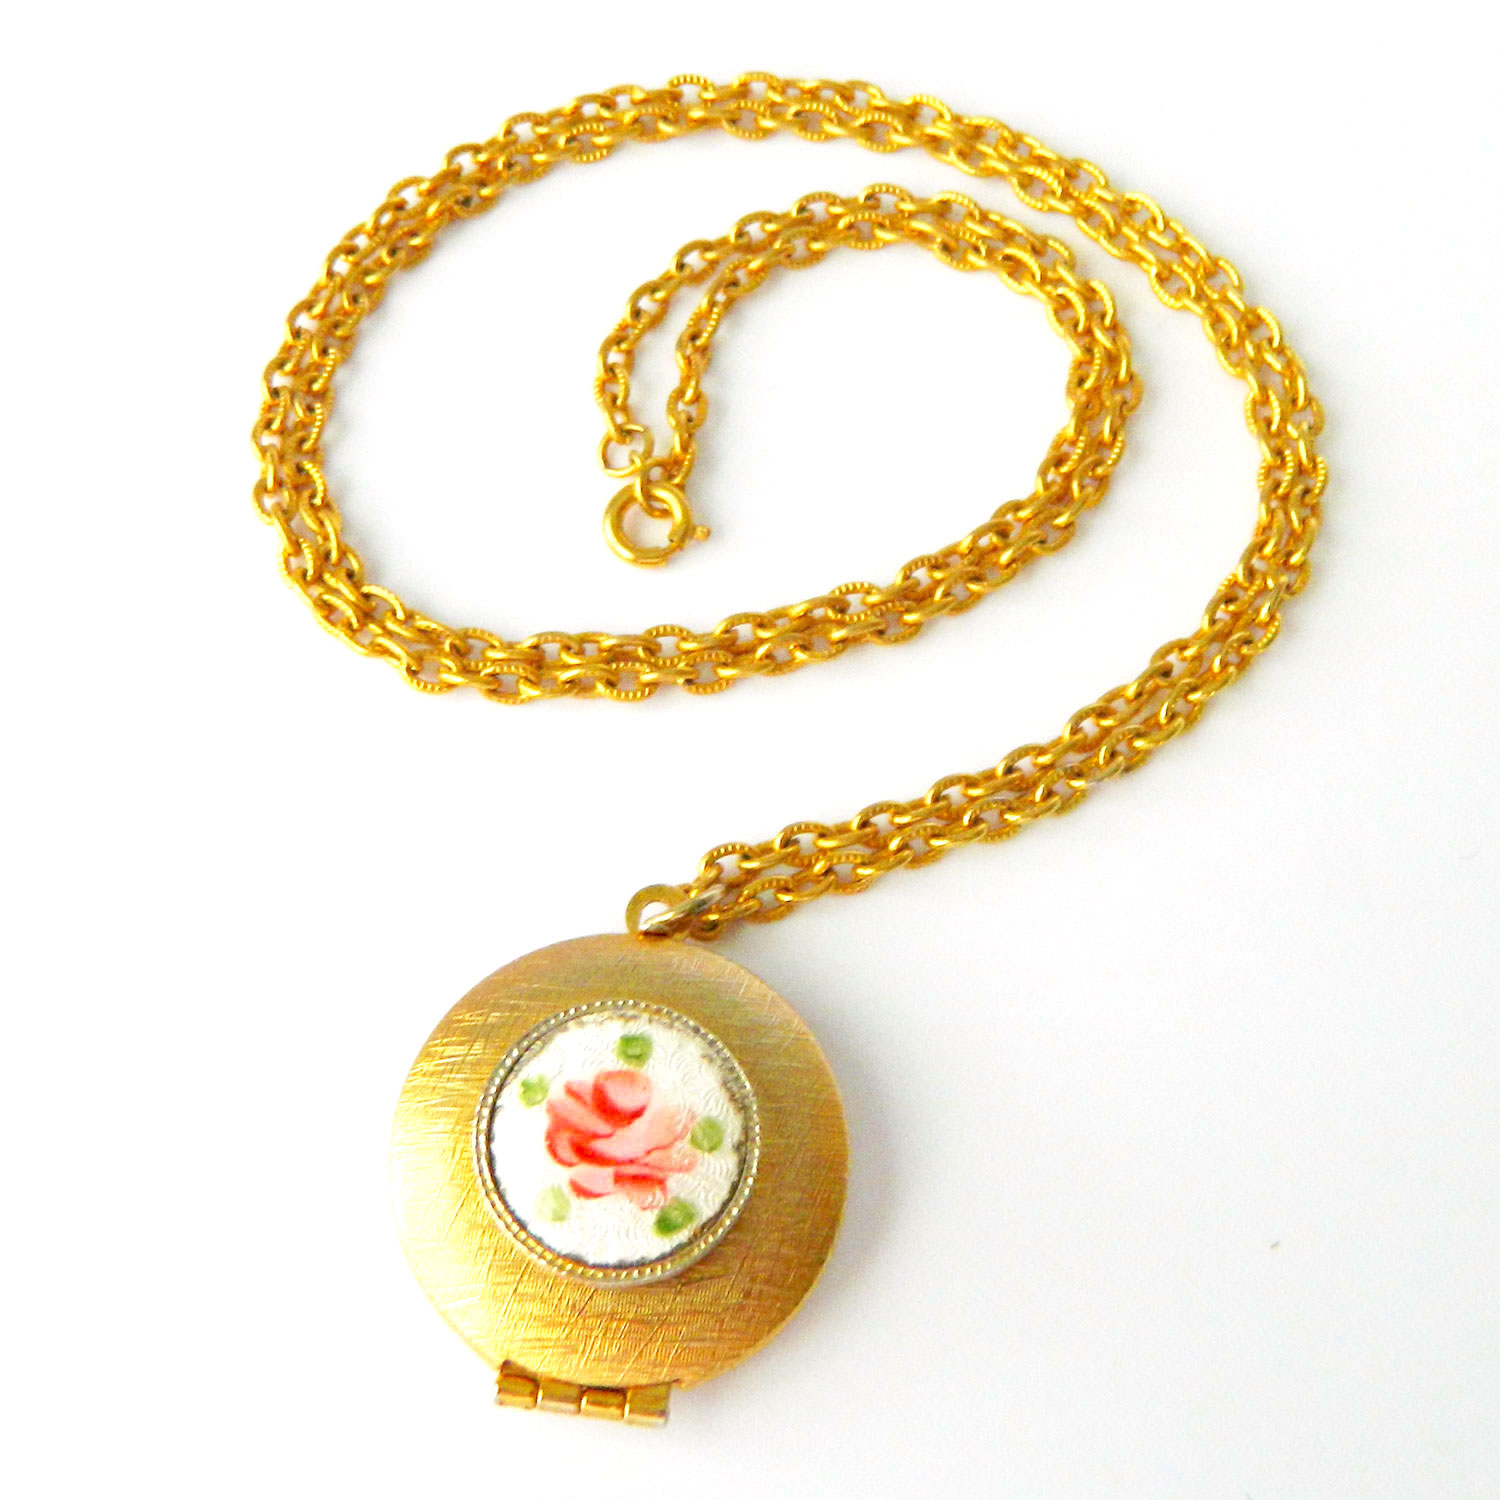 Vintage locket necklace